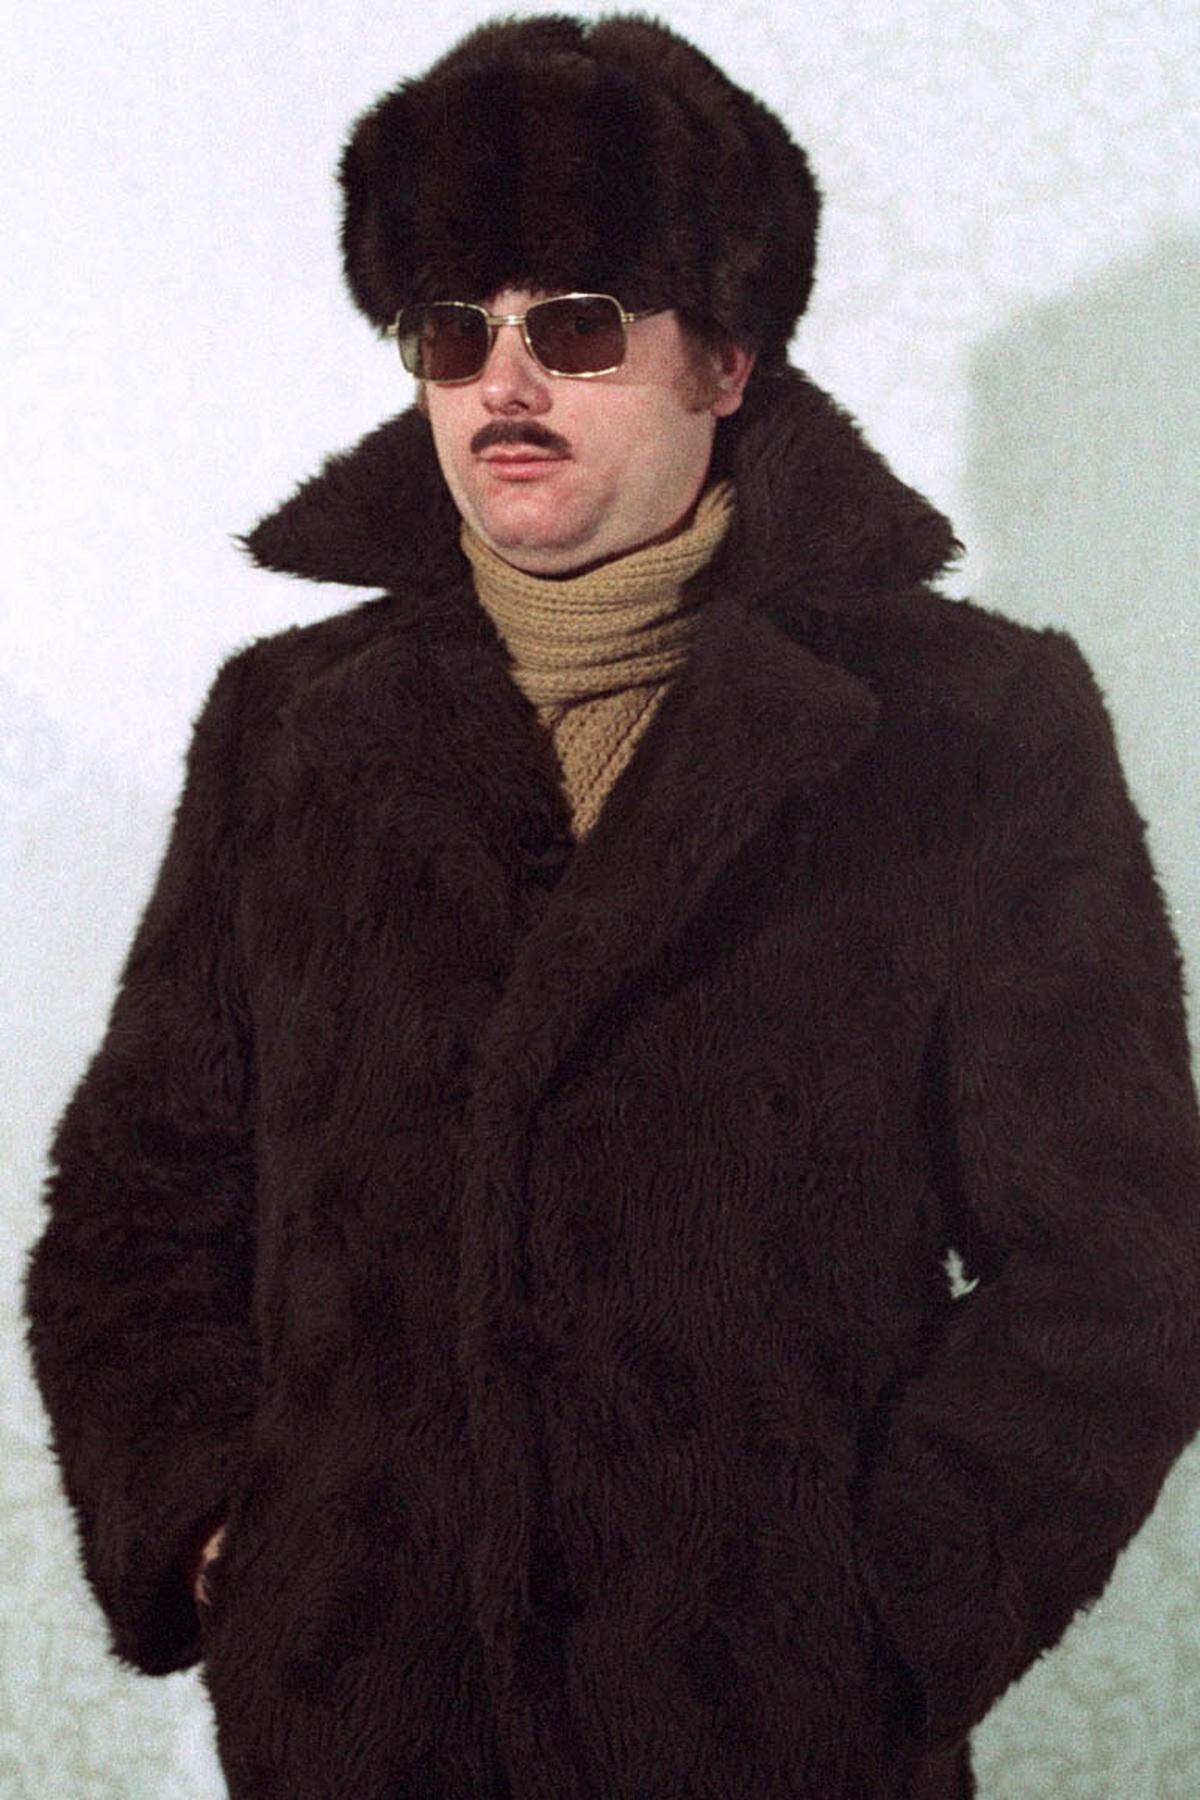 Die flauschige Stasi-Winterkollektion. Ob die Kombination aus Sonnenbrille und Pelzmantel wirklich zum Tarnen und Täuschen geeignet war, sei einmal dahingestellt.